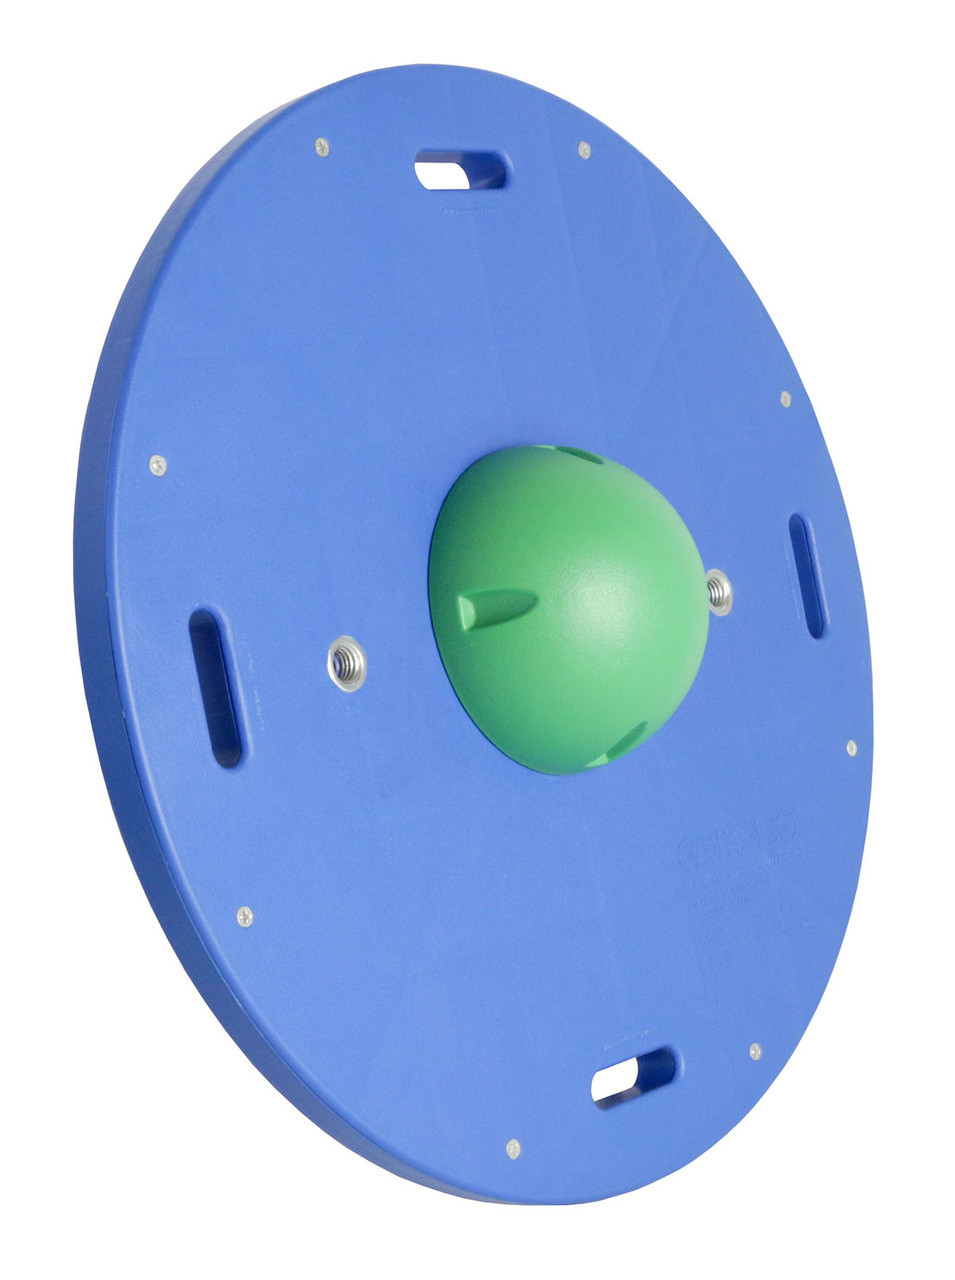 CanDo¨ Balance Board Comboª 16" circular wobble/rocker board - 2" height - green